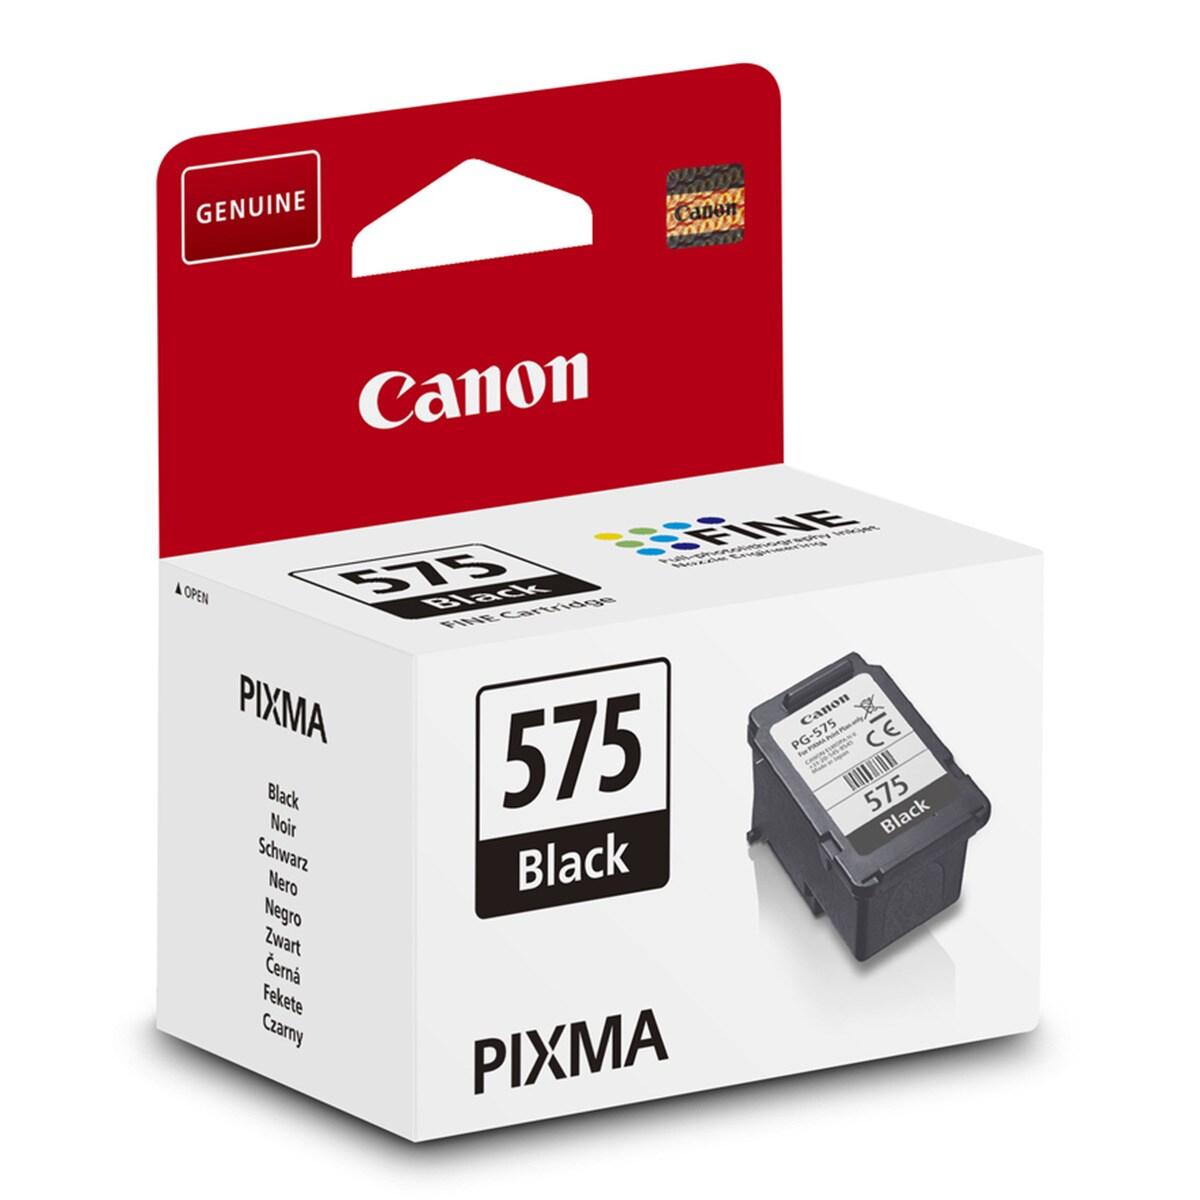 Cartuchos Canon Pixma TS3550i